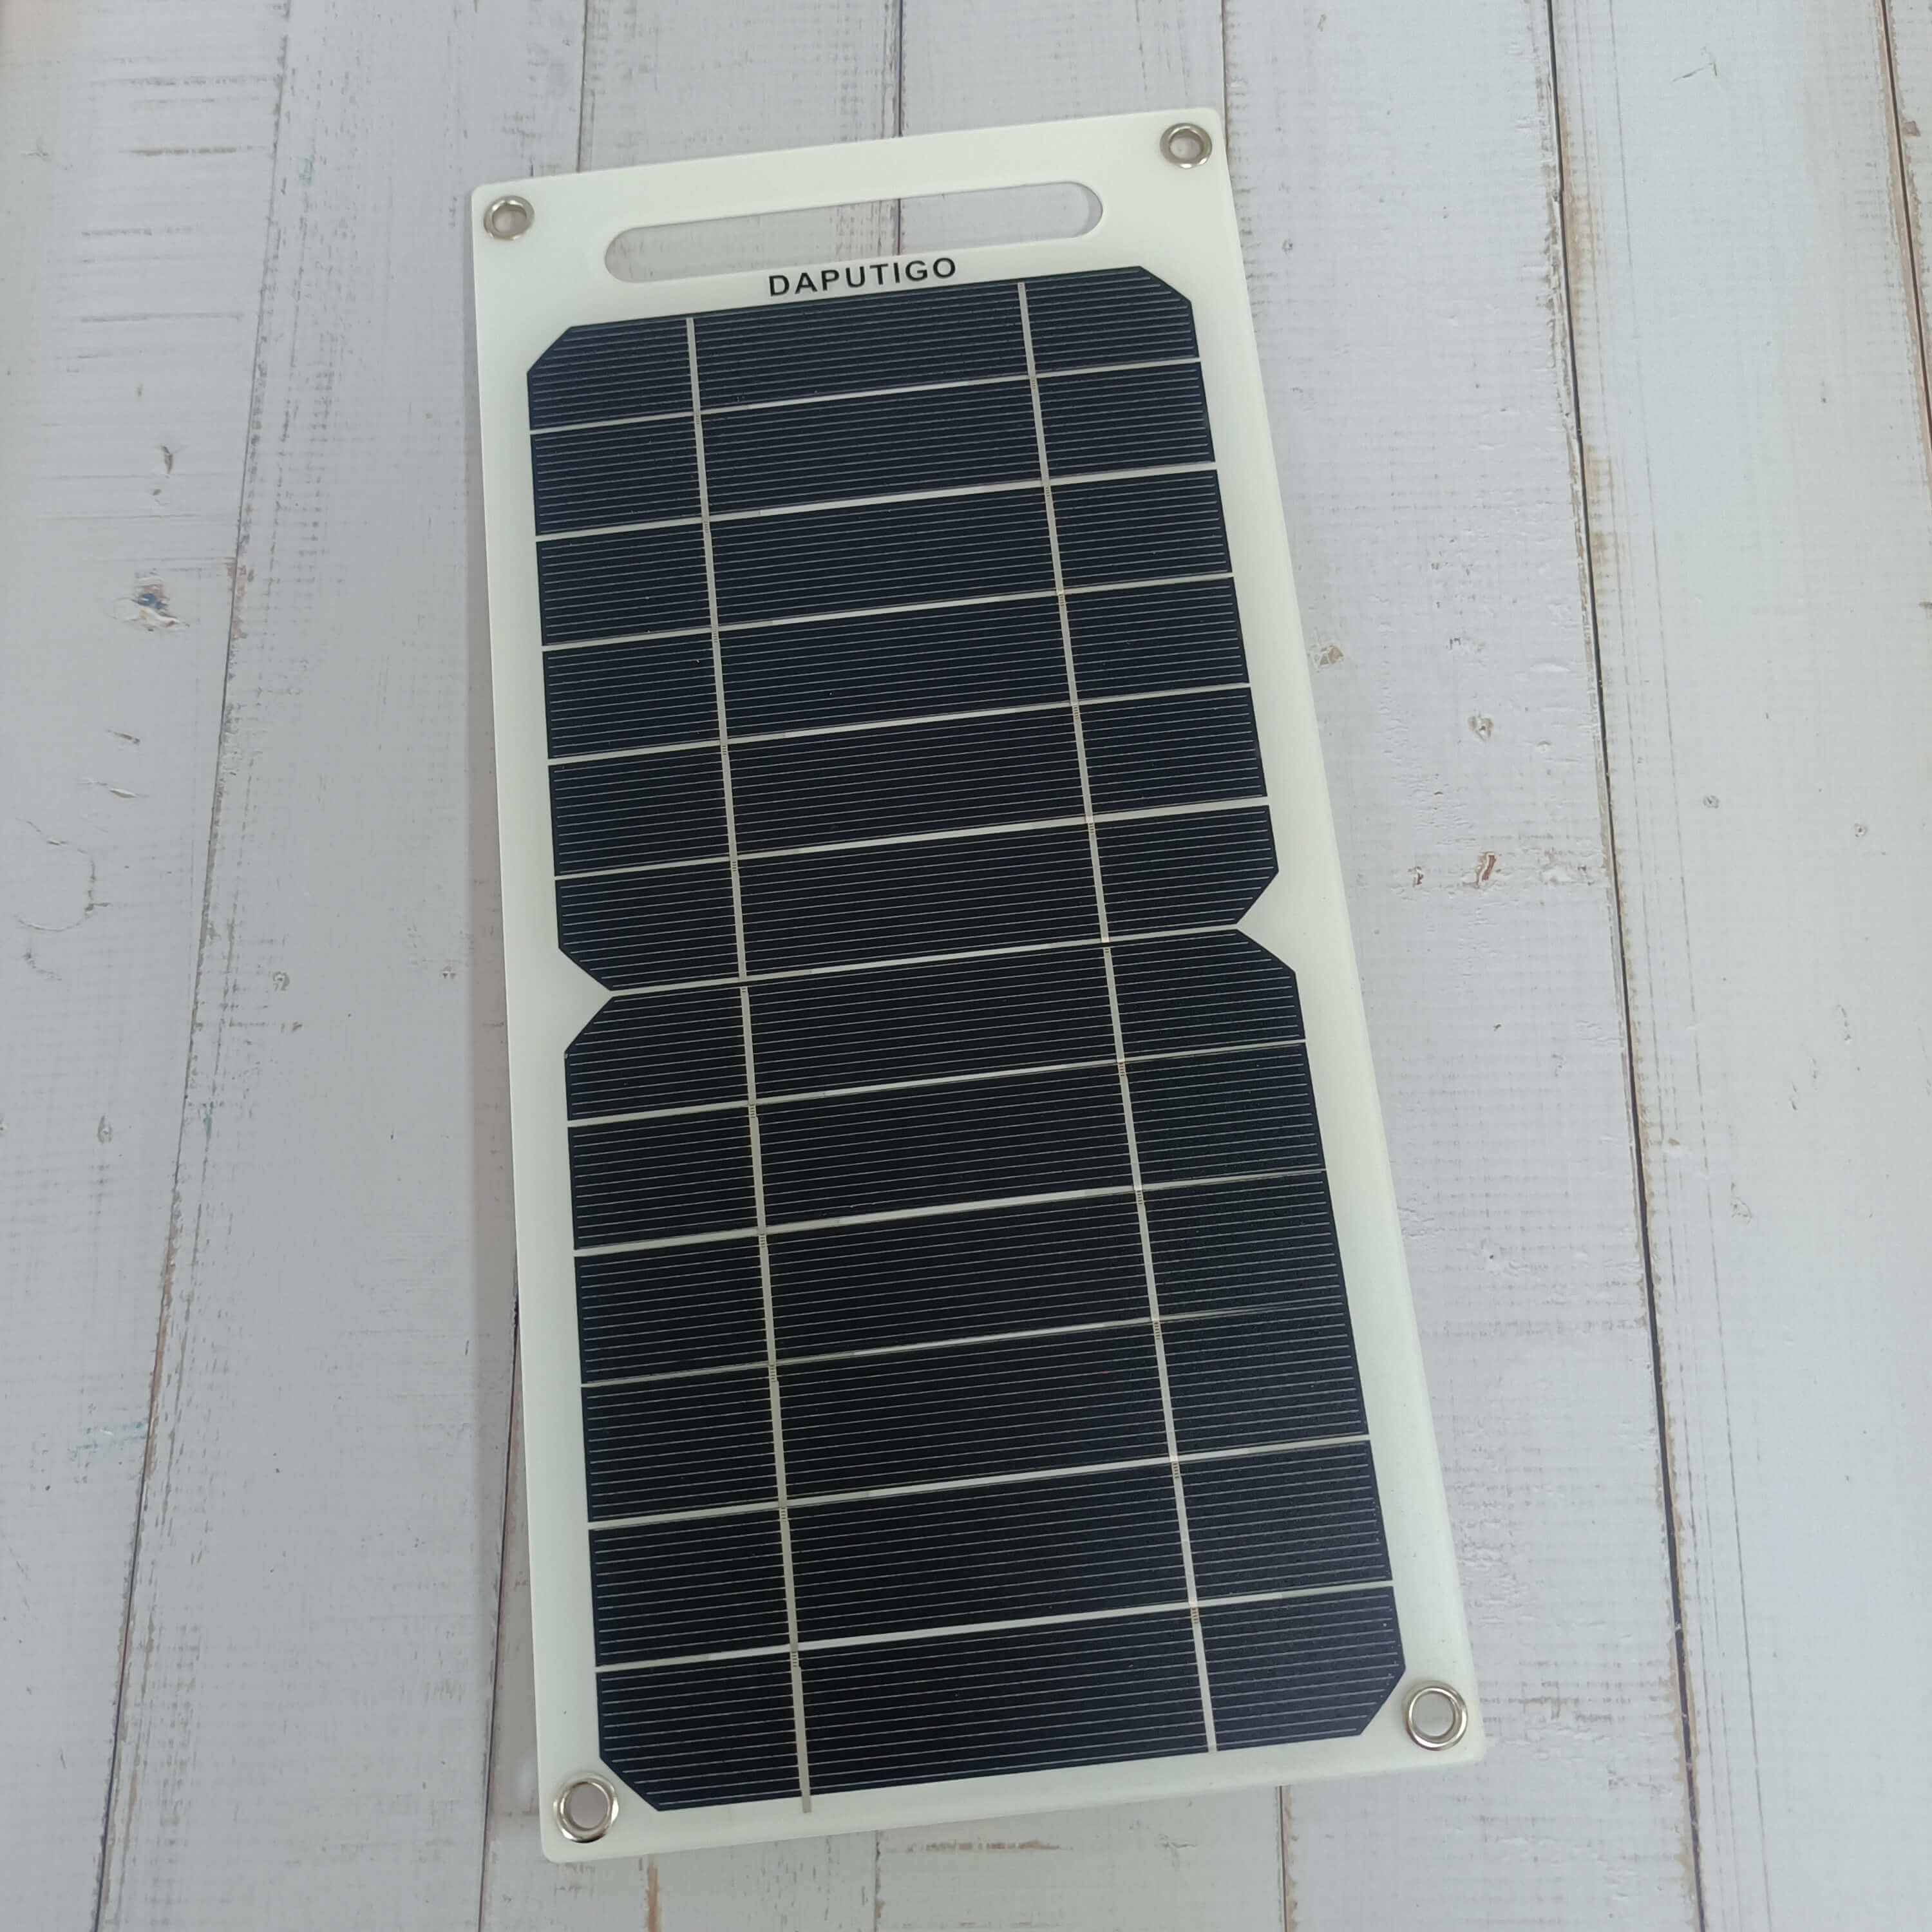 DAPUTIGO 10W 6V portable Monocrystalline-type solar panel